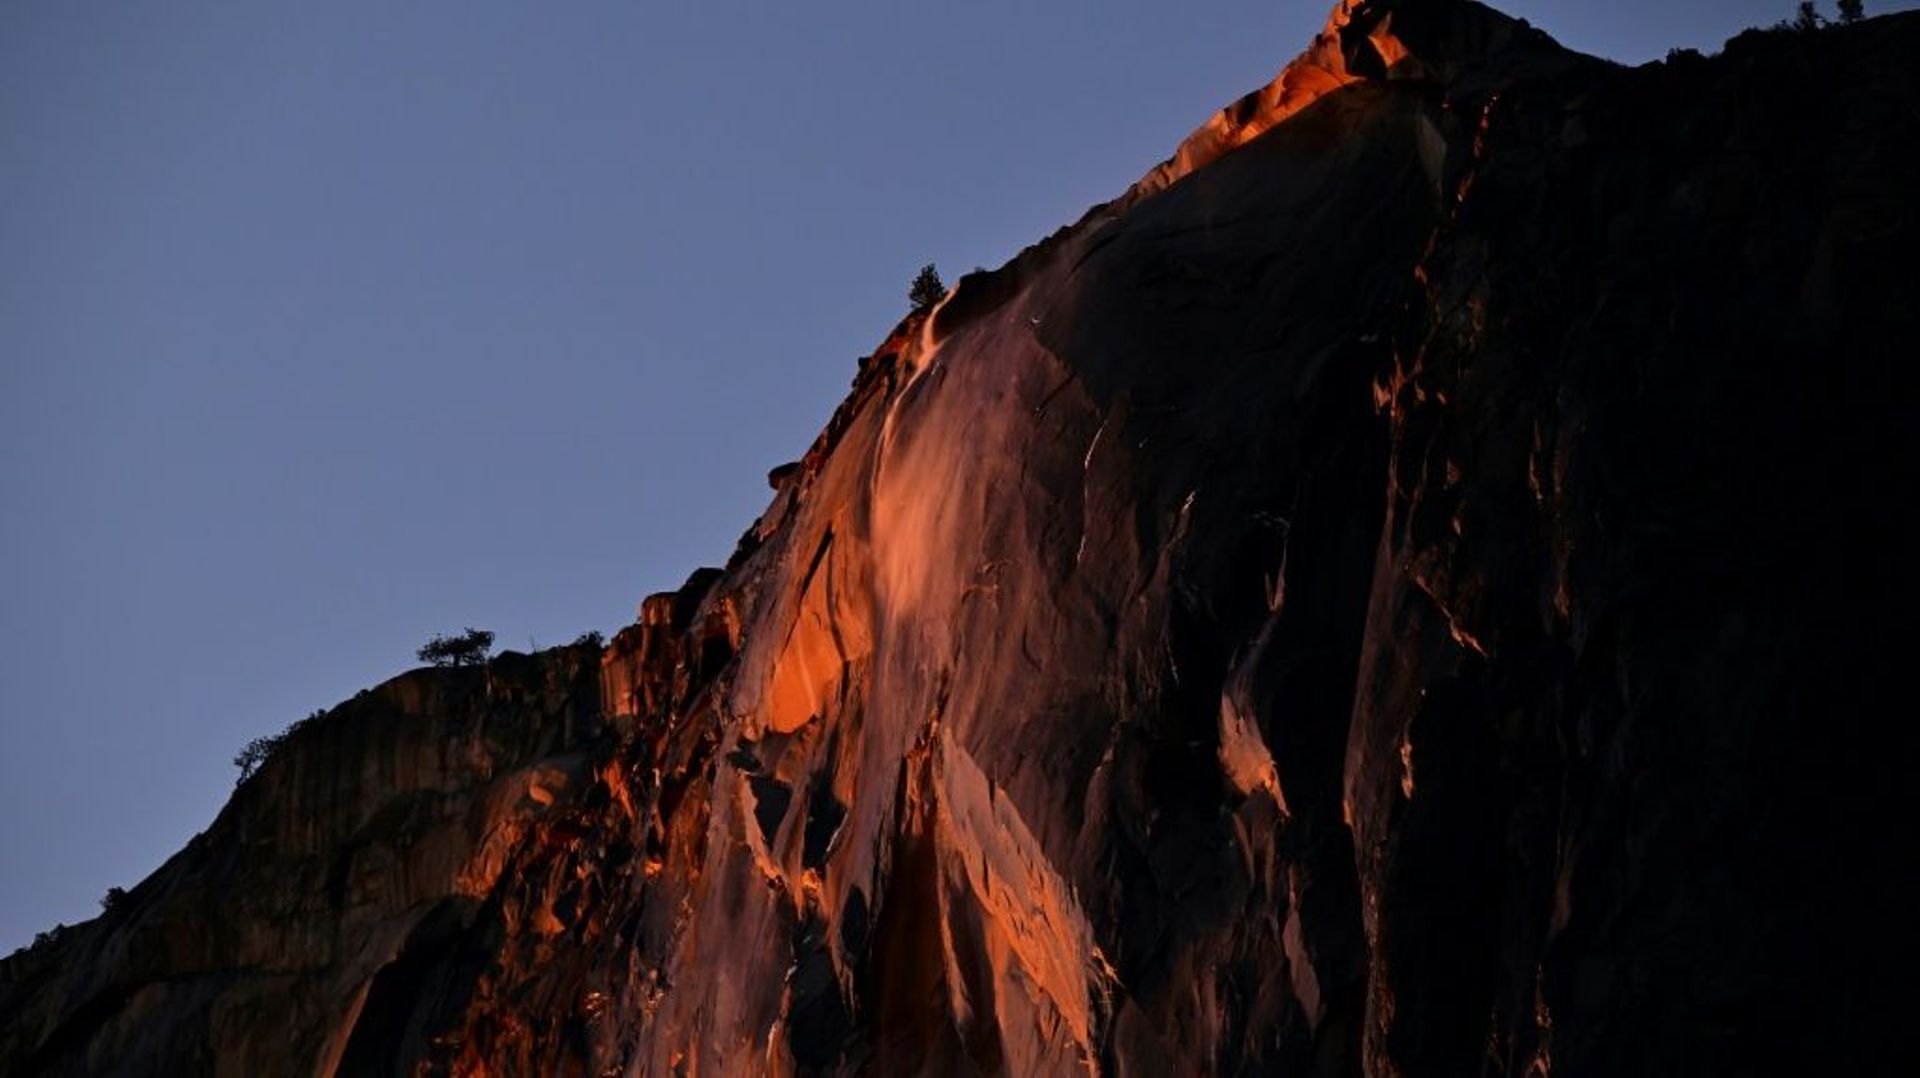 Une spectaculaire "cascade de feu" a fait le bonheur des photographes et amoureux de la nature dans le parc national de Yosemite, en Californie